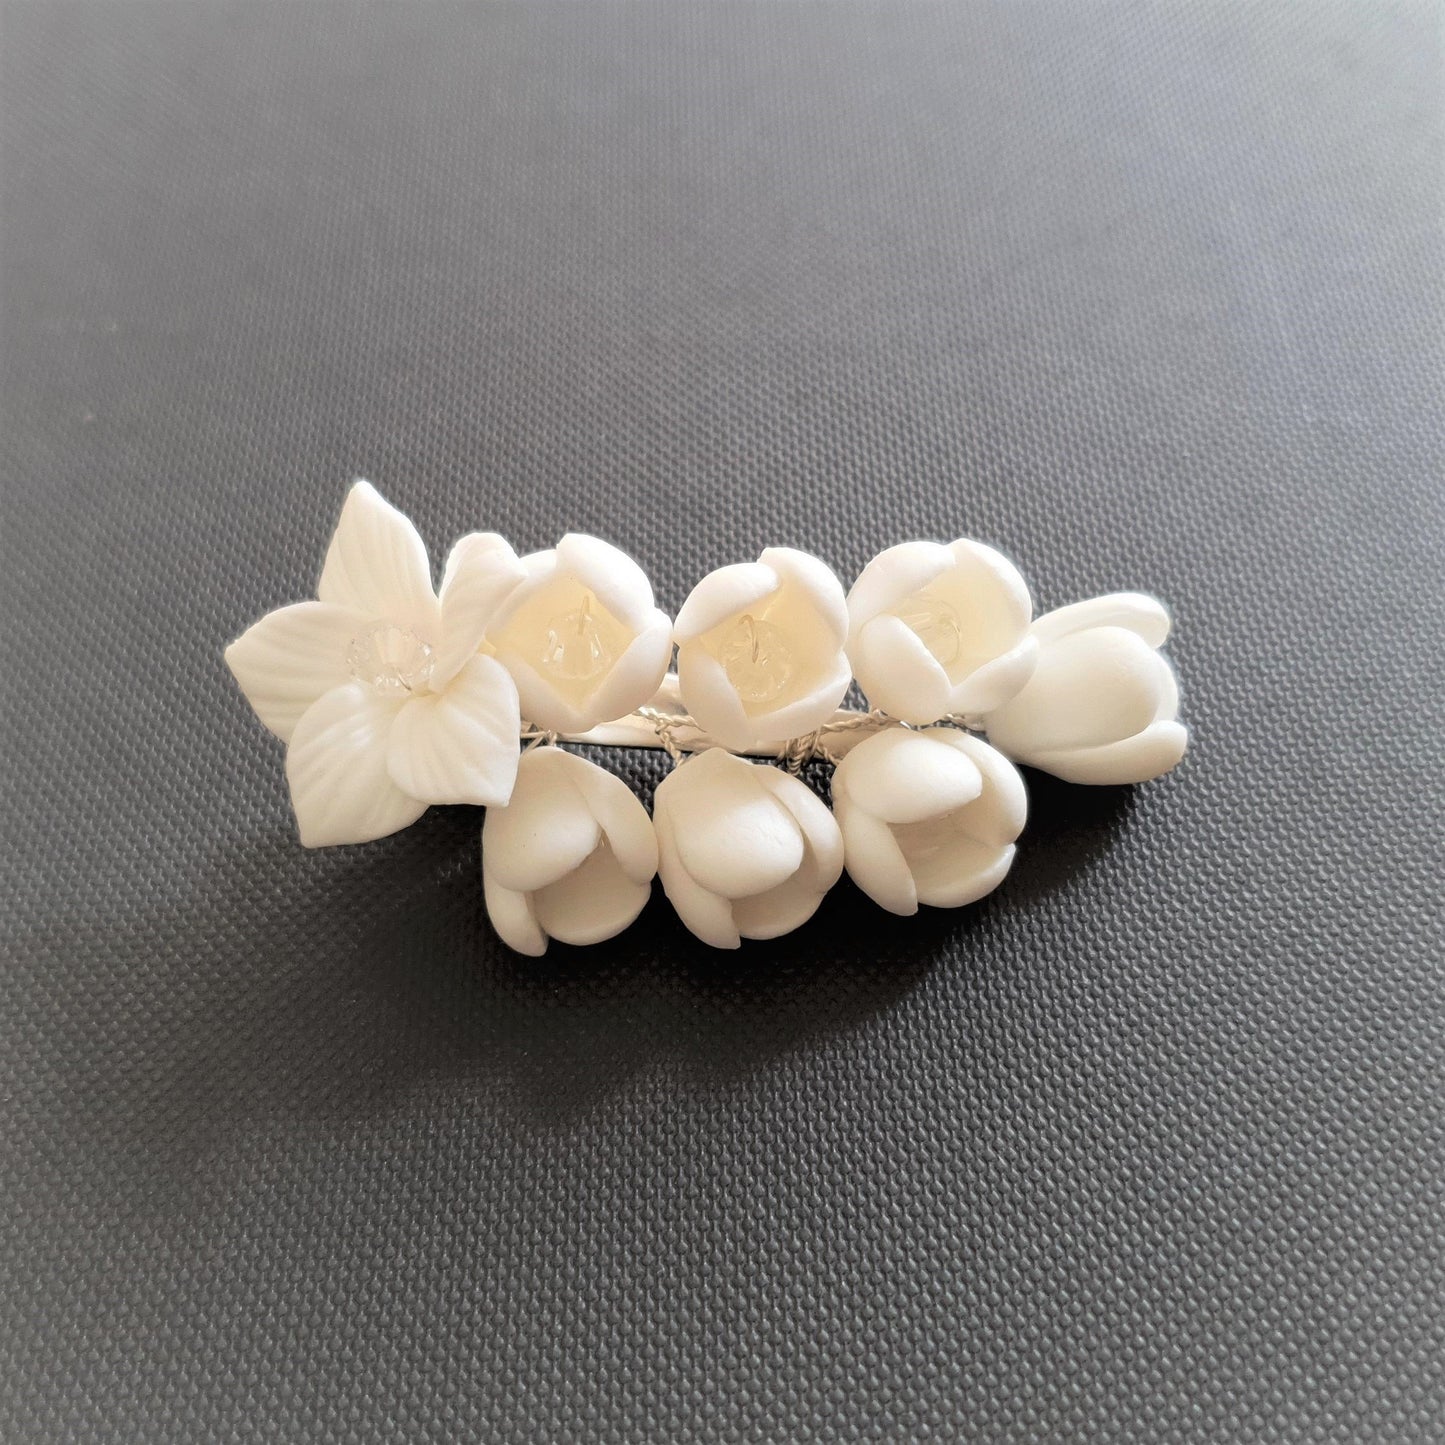 White Flower Wedding Hair Clip for Flower Girls-Lilac